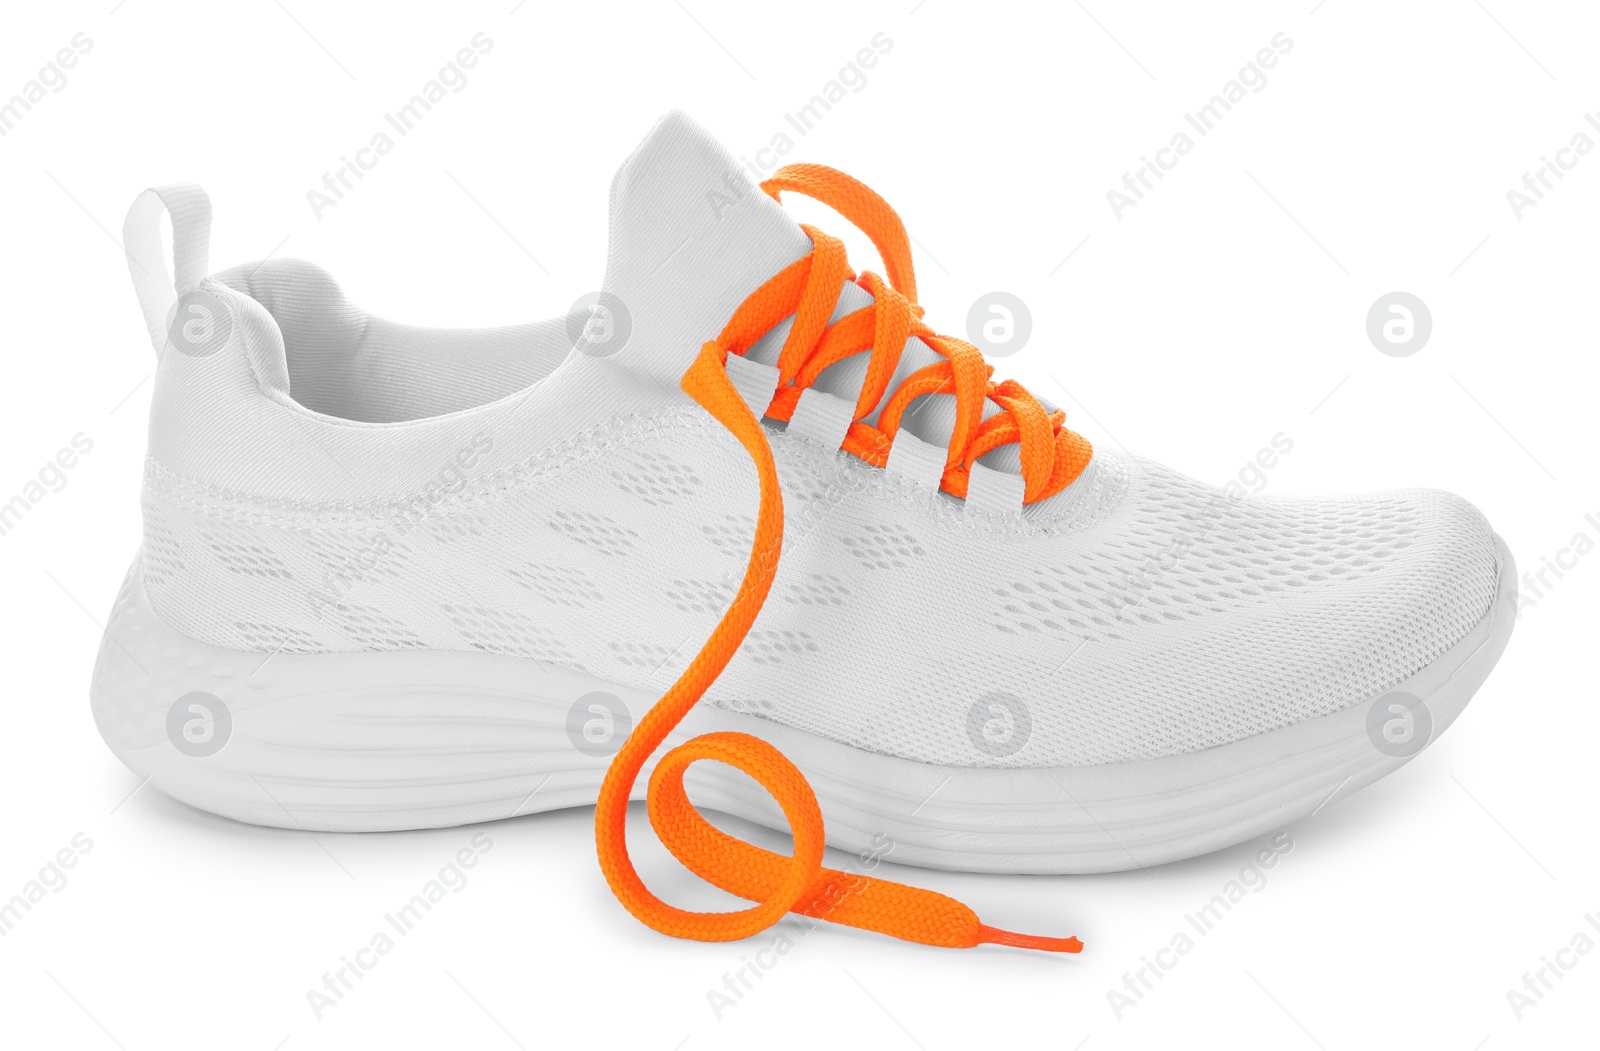 Photo of Stylish sneaker with orange shoelaces on white background